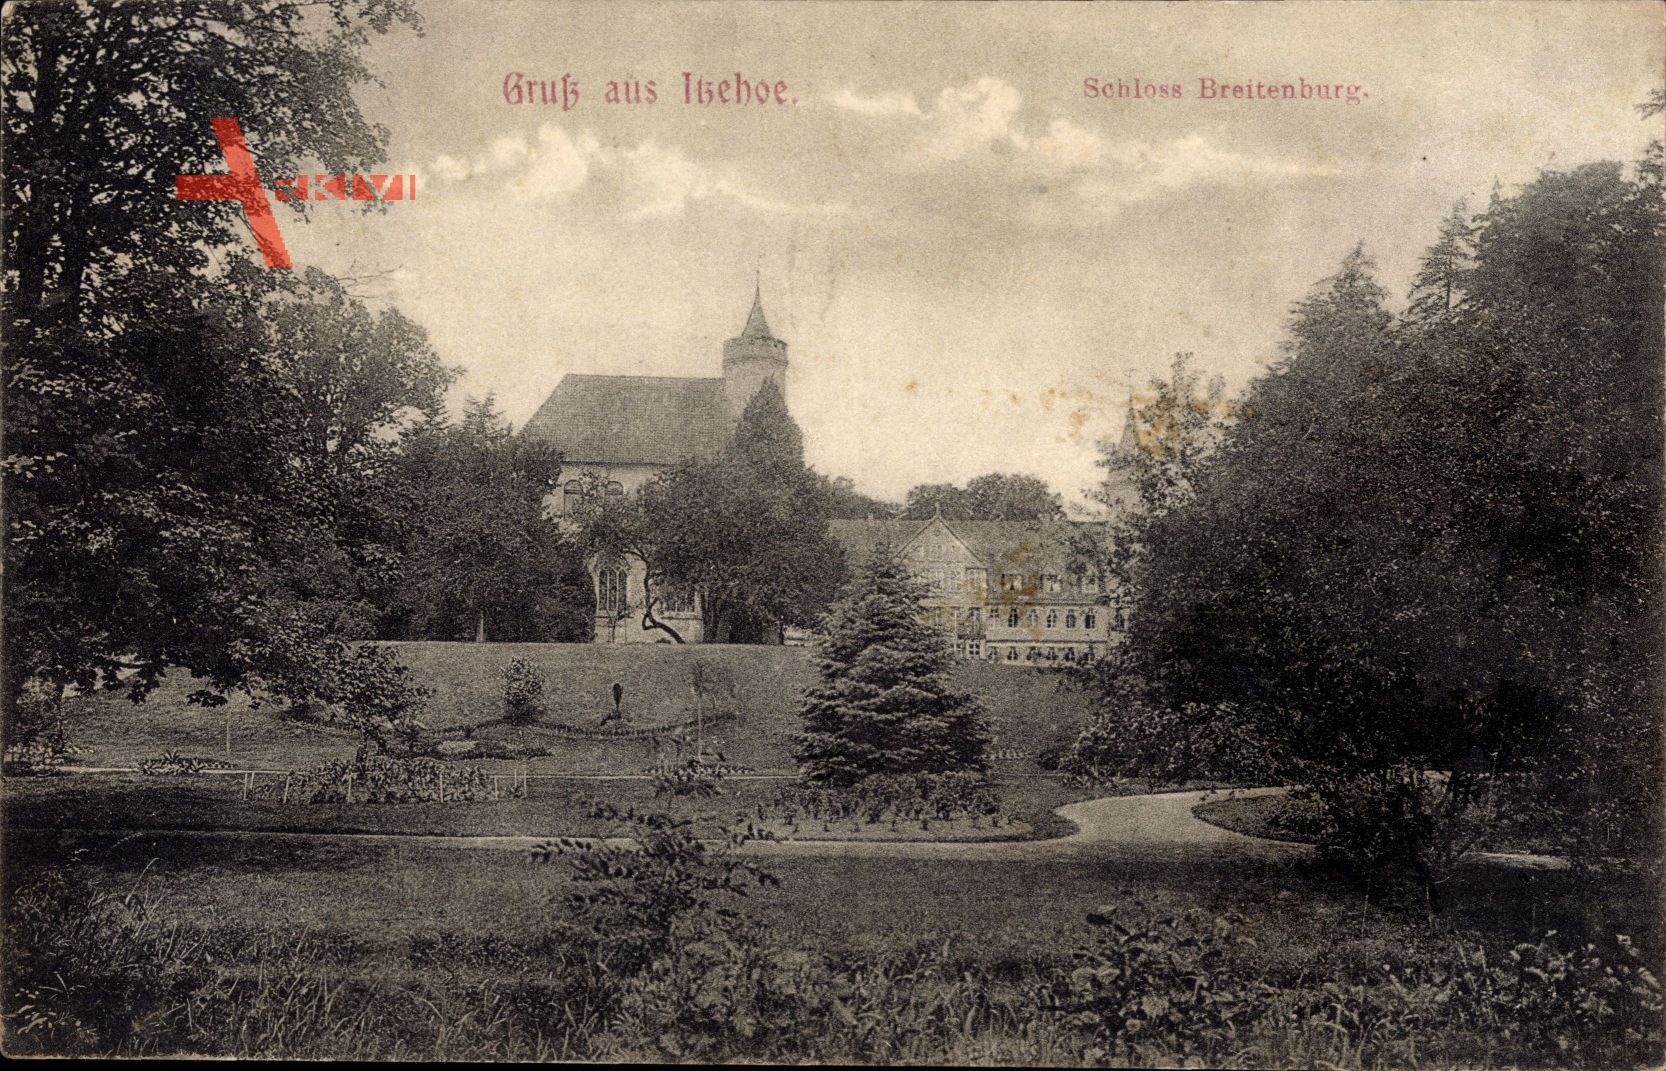 Itzehoe in Schleswig Holstein, Blick vom Park auf das Schloss Breitenburg